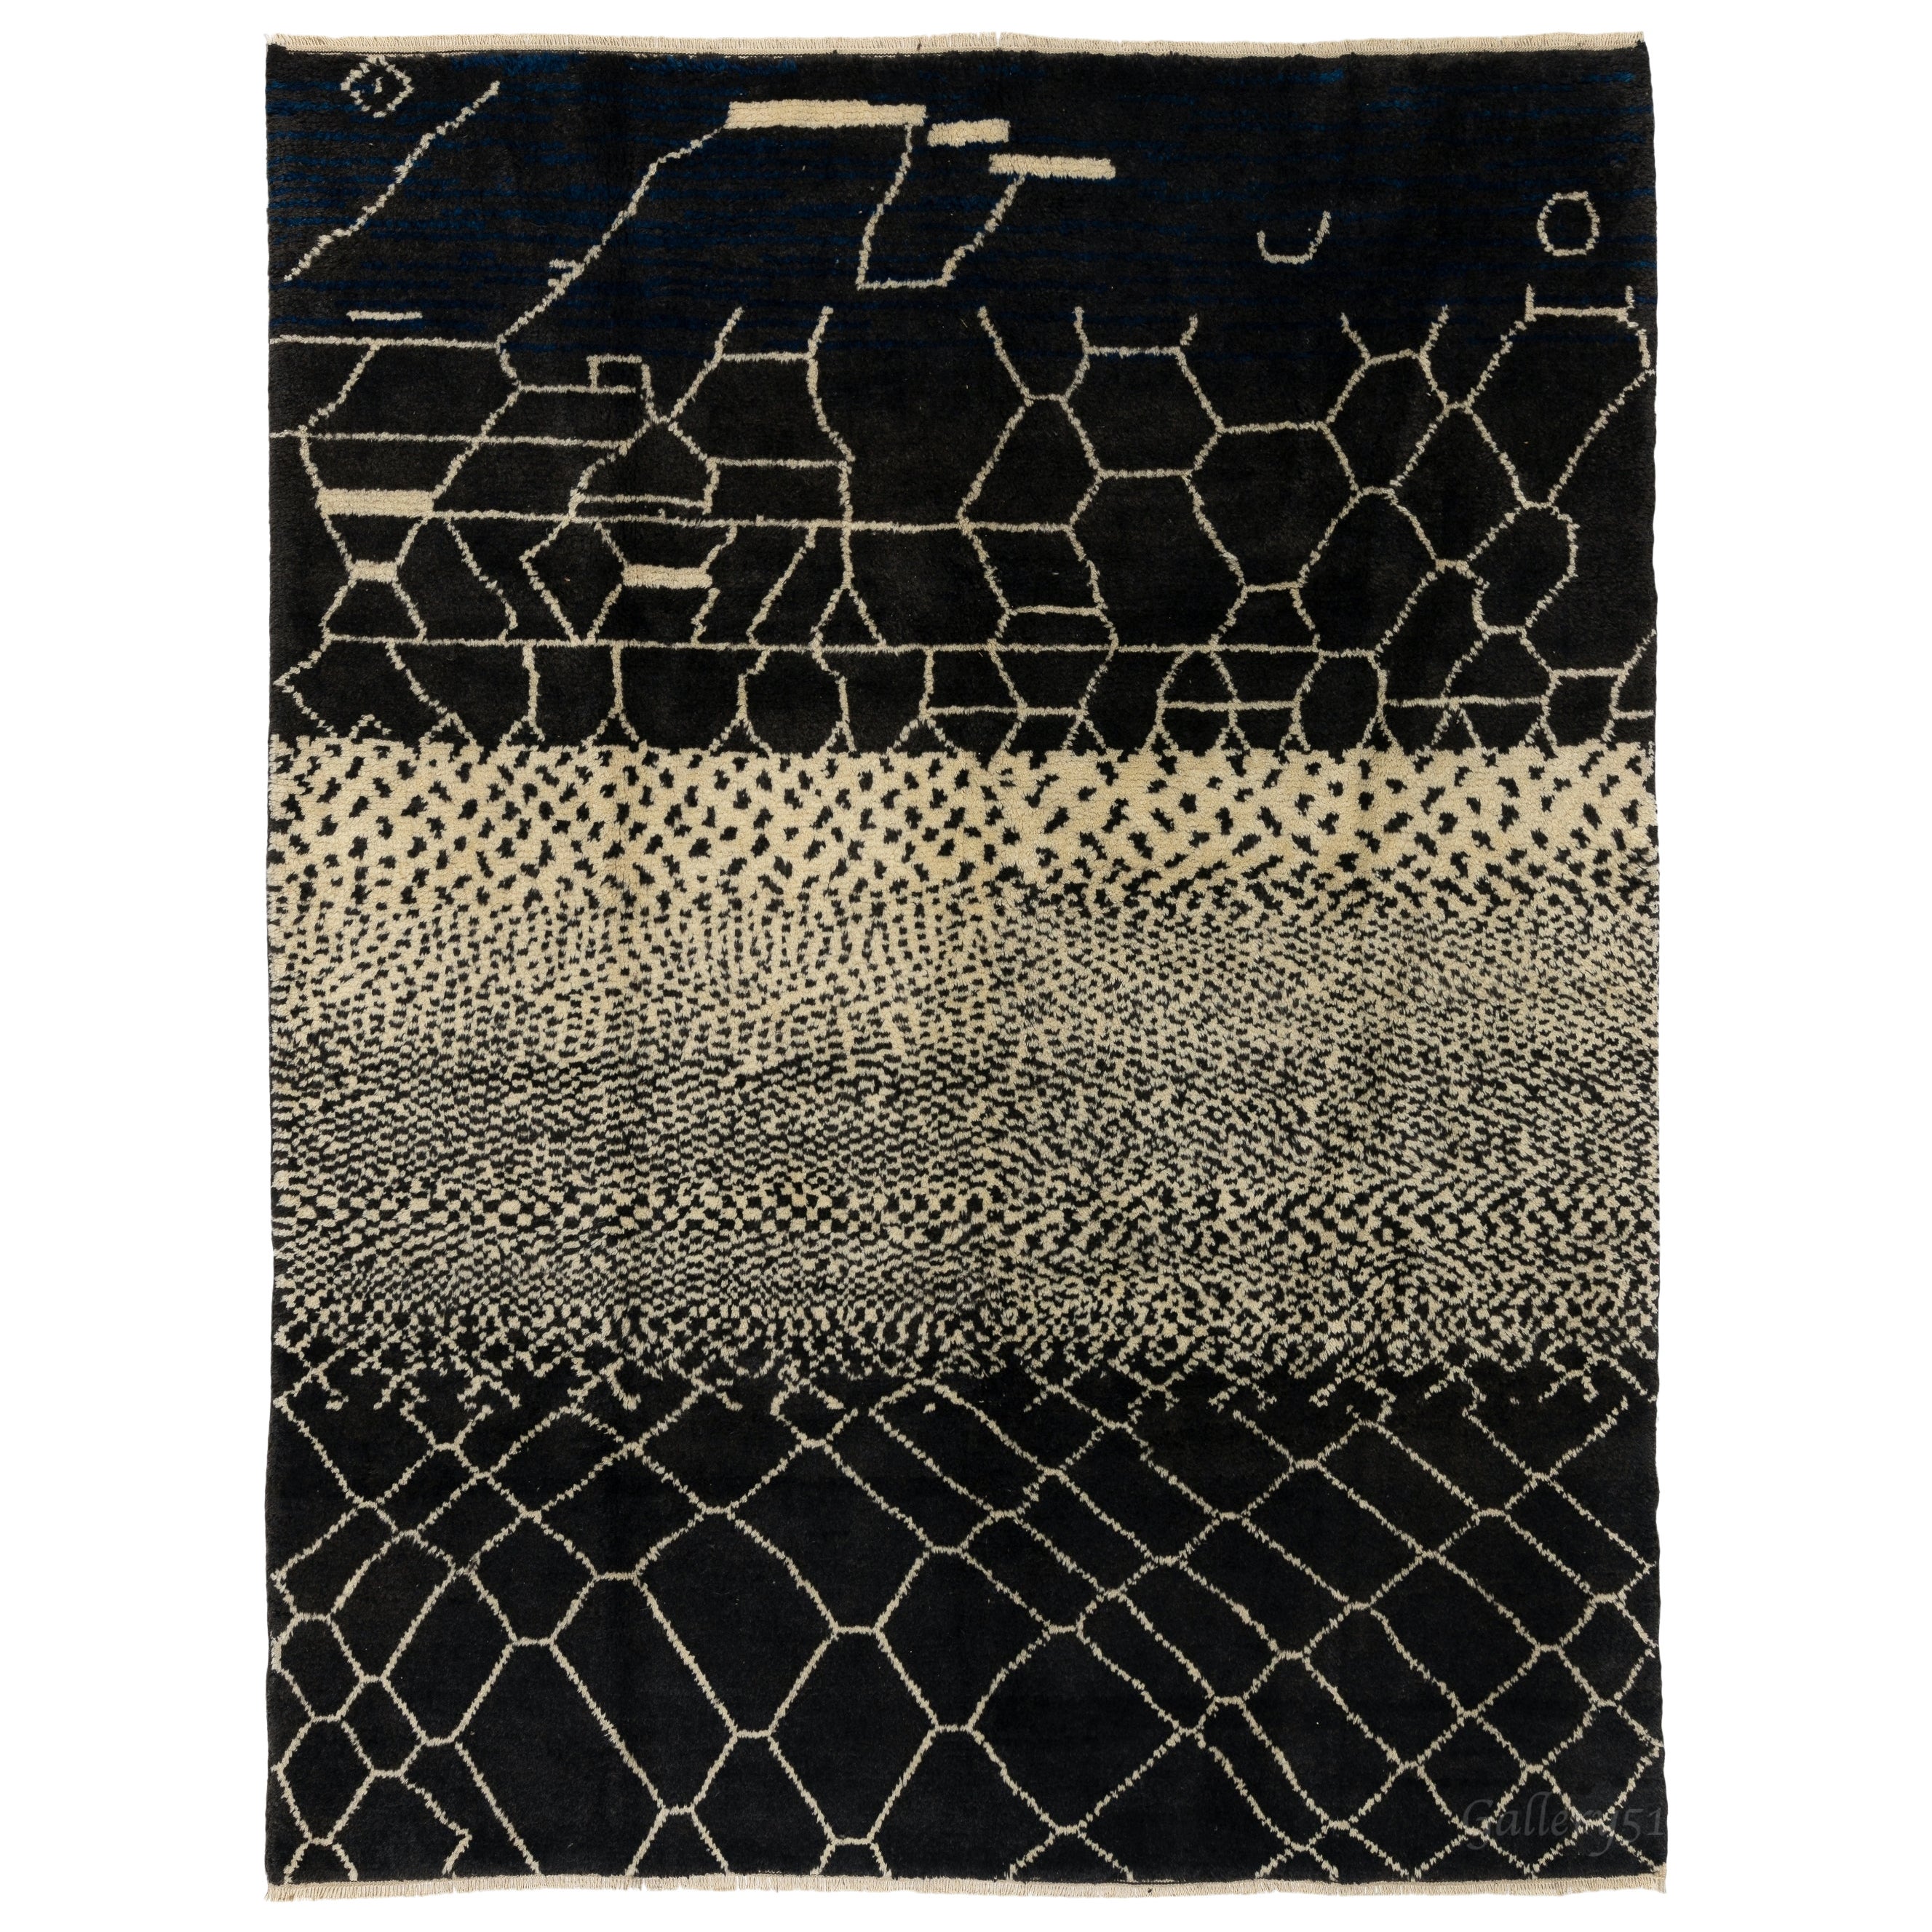 Moderner handgefertigter Teppich aus 100 % schwarzer und cremefarbener Wolle. Kundenspezifische Optionen verfügbar